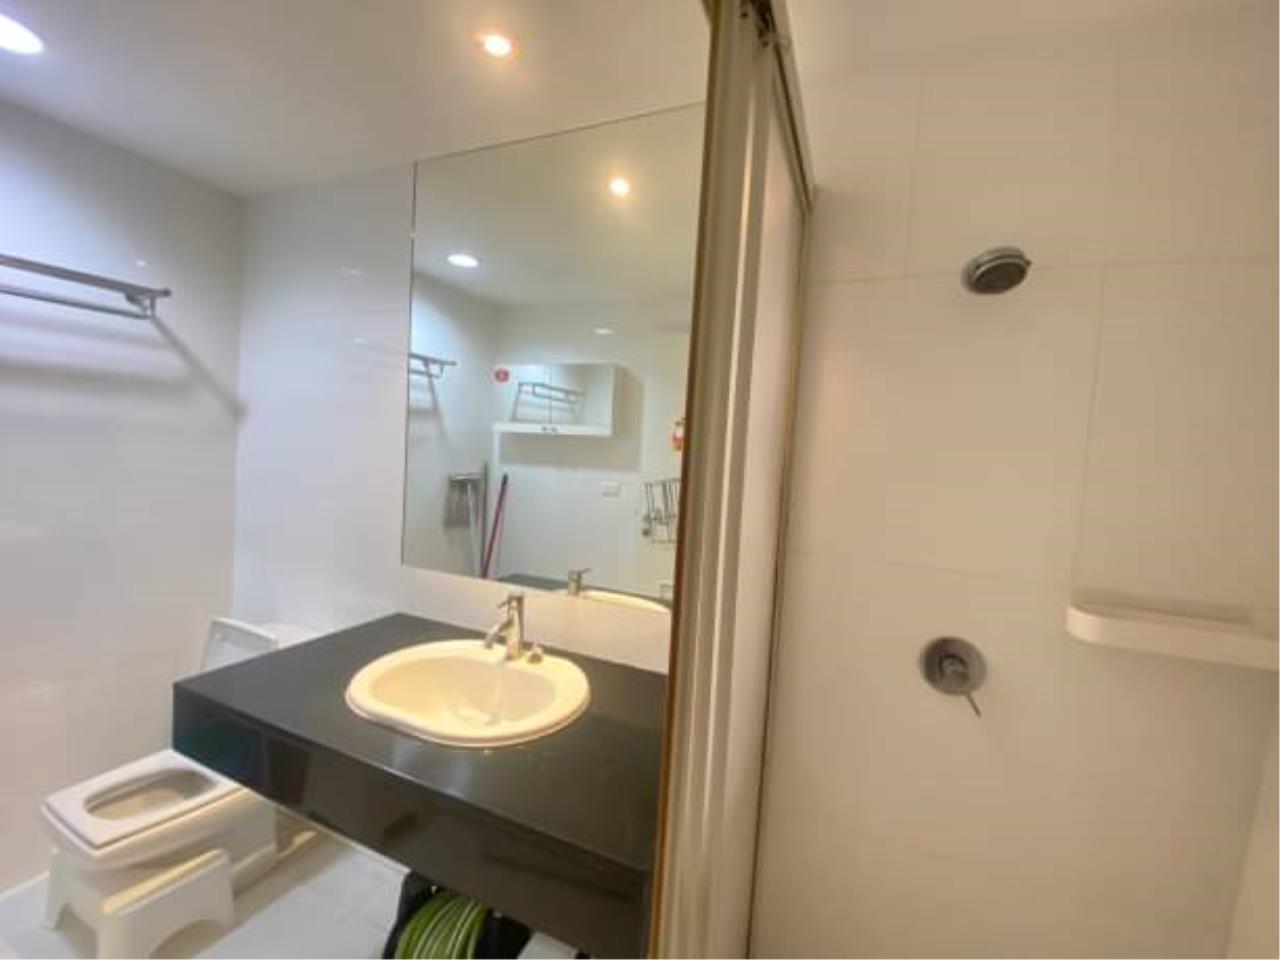 2 bedrooms 2 bathrooms sukhumvit city resort for rent